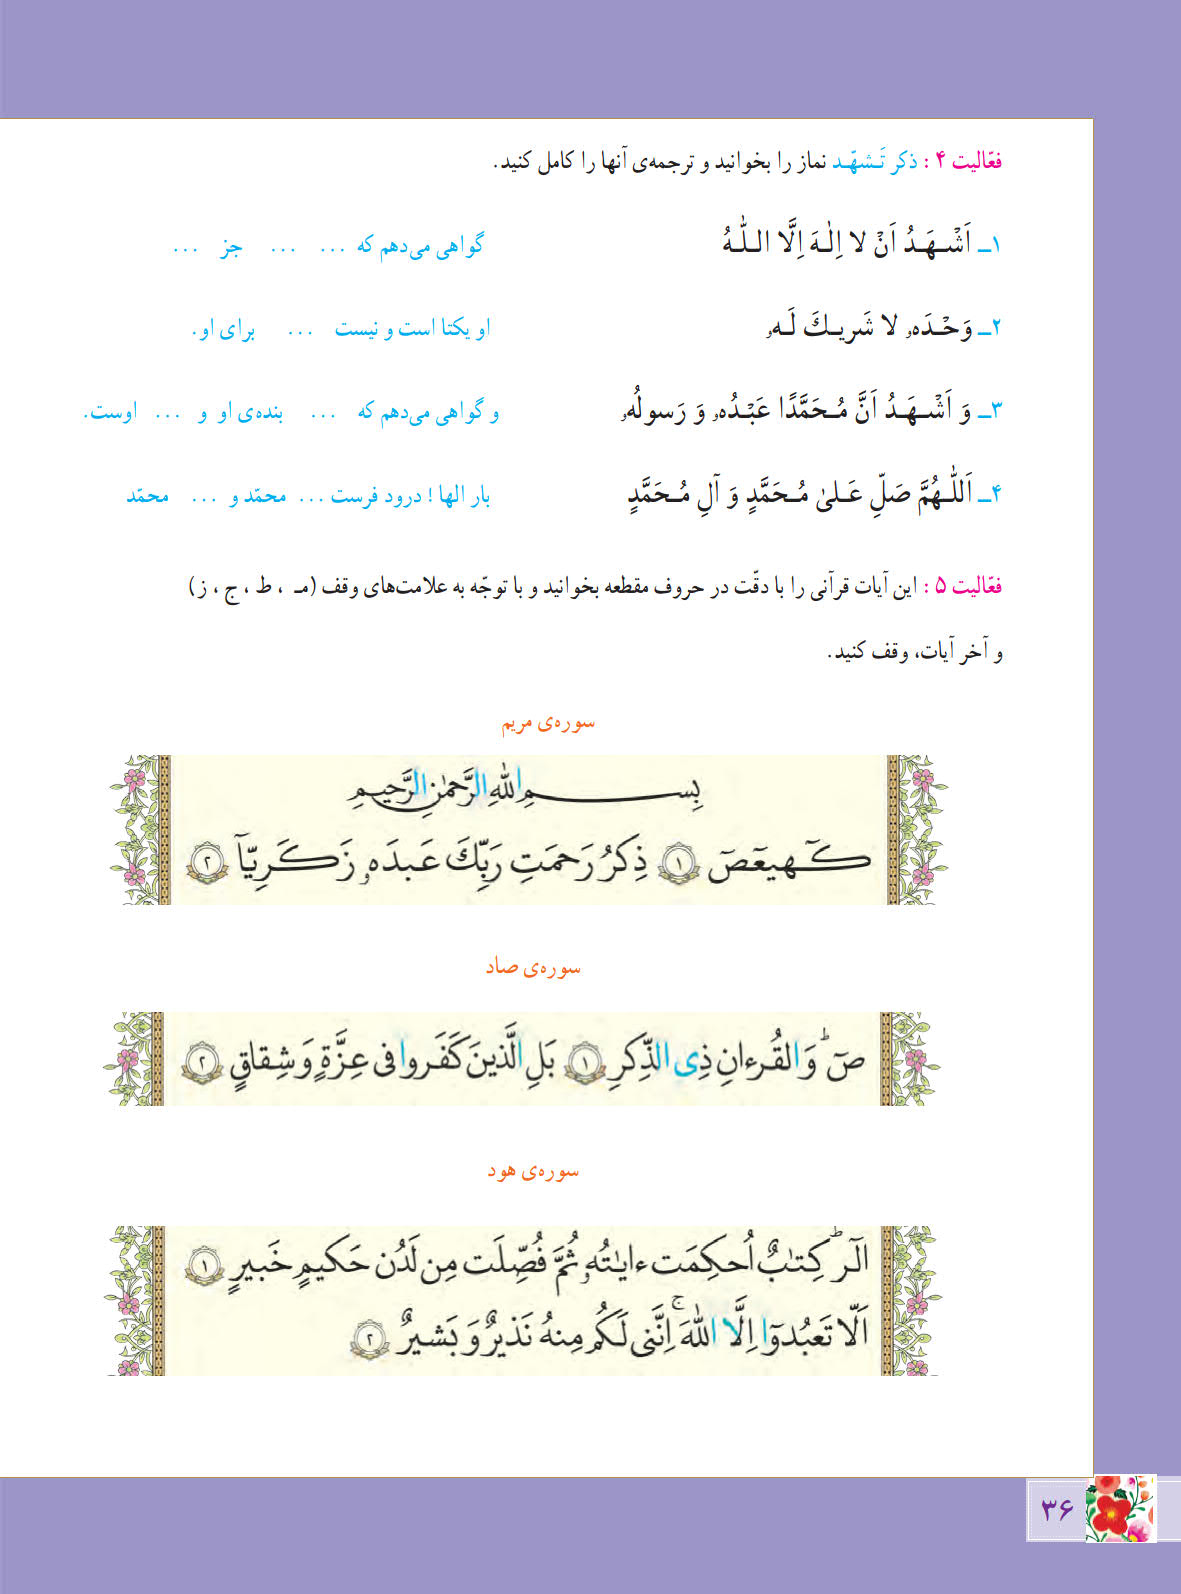 روخوانی و متن و پاسخ یادآوری صفحه 36 درس پنجم آموزش قرآن ششم ابتدایی - کلاس اینترنتی ما - مومکا - momeka.ir (1)